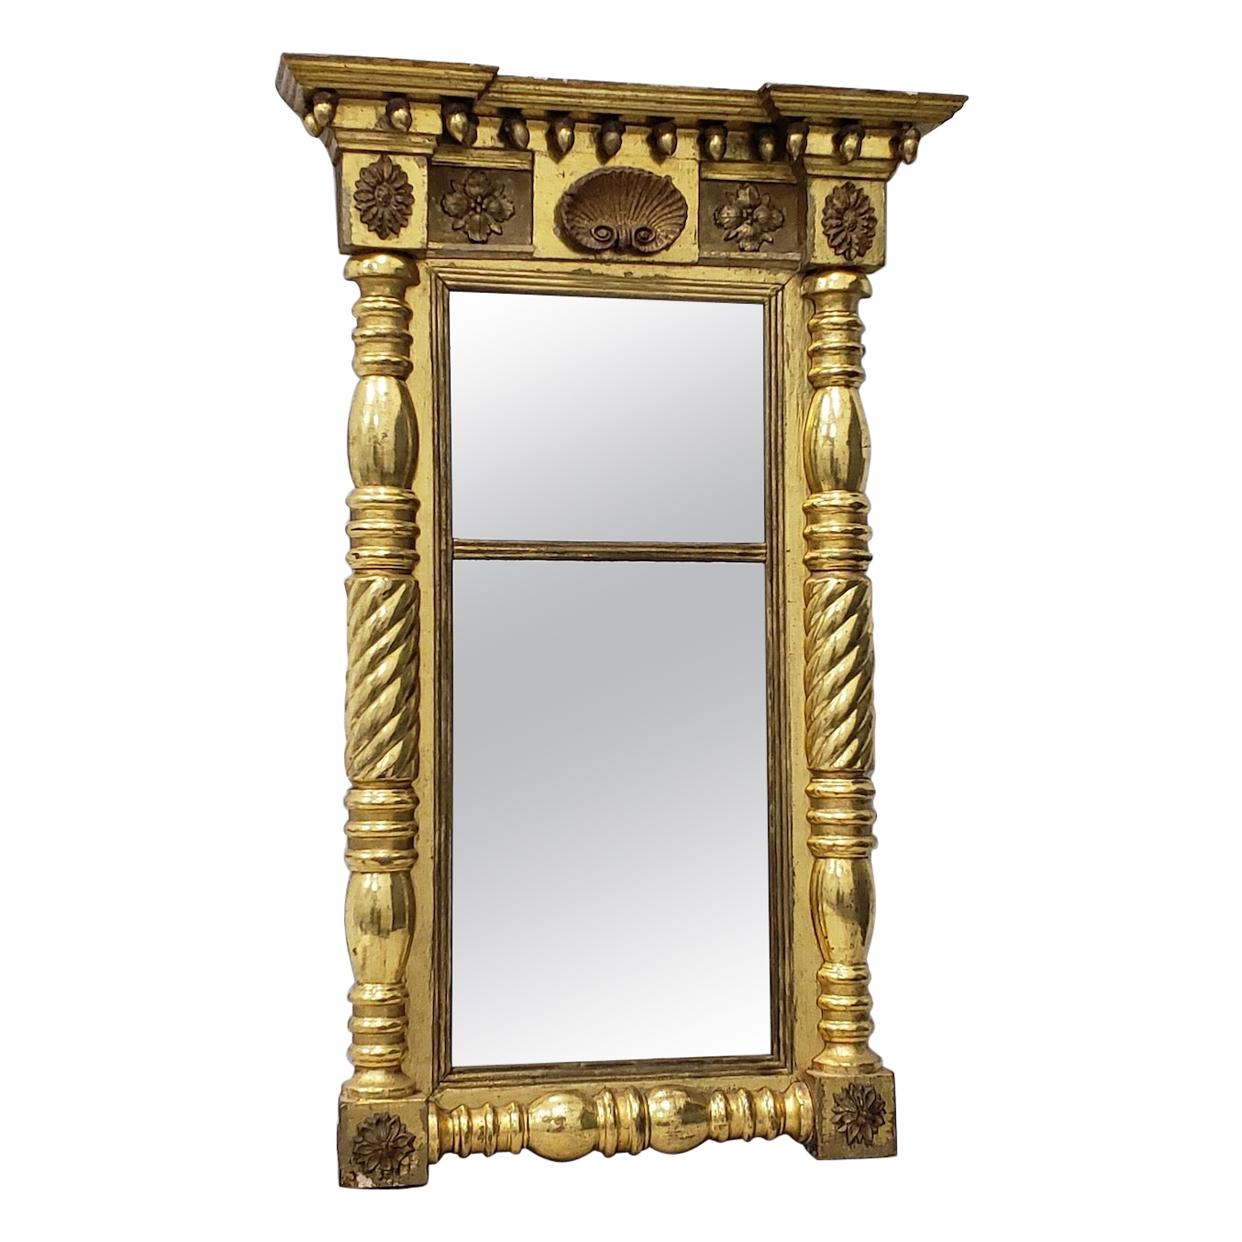 Miroir doré et sculpté à la main, vers 1820, américain du début du 19e siècle